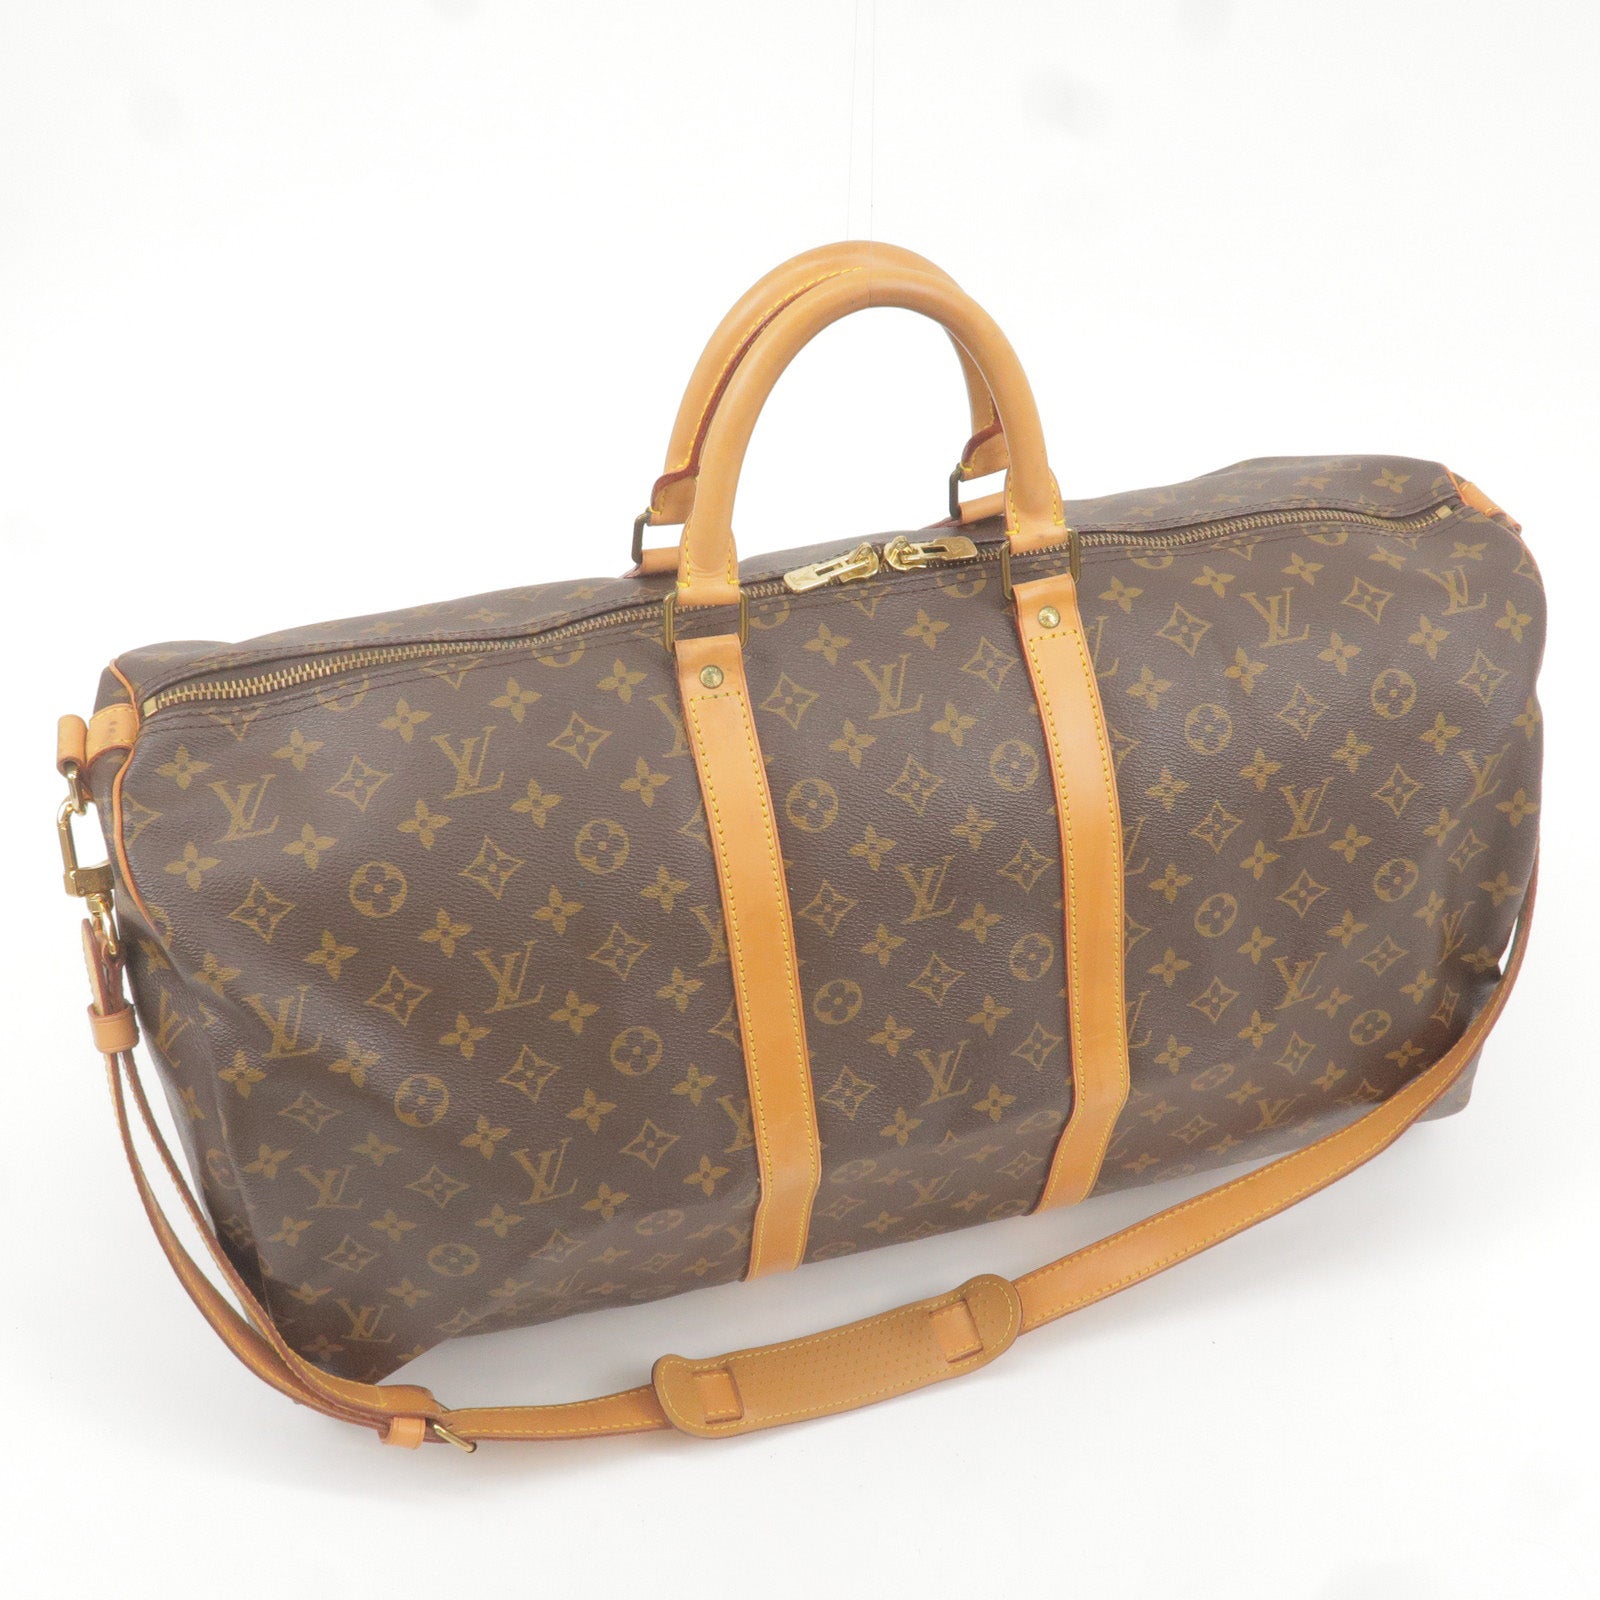 Louis Vuitton Yayoi Kusama Keepall Bandouliere 55 Travel Bag